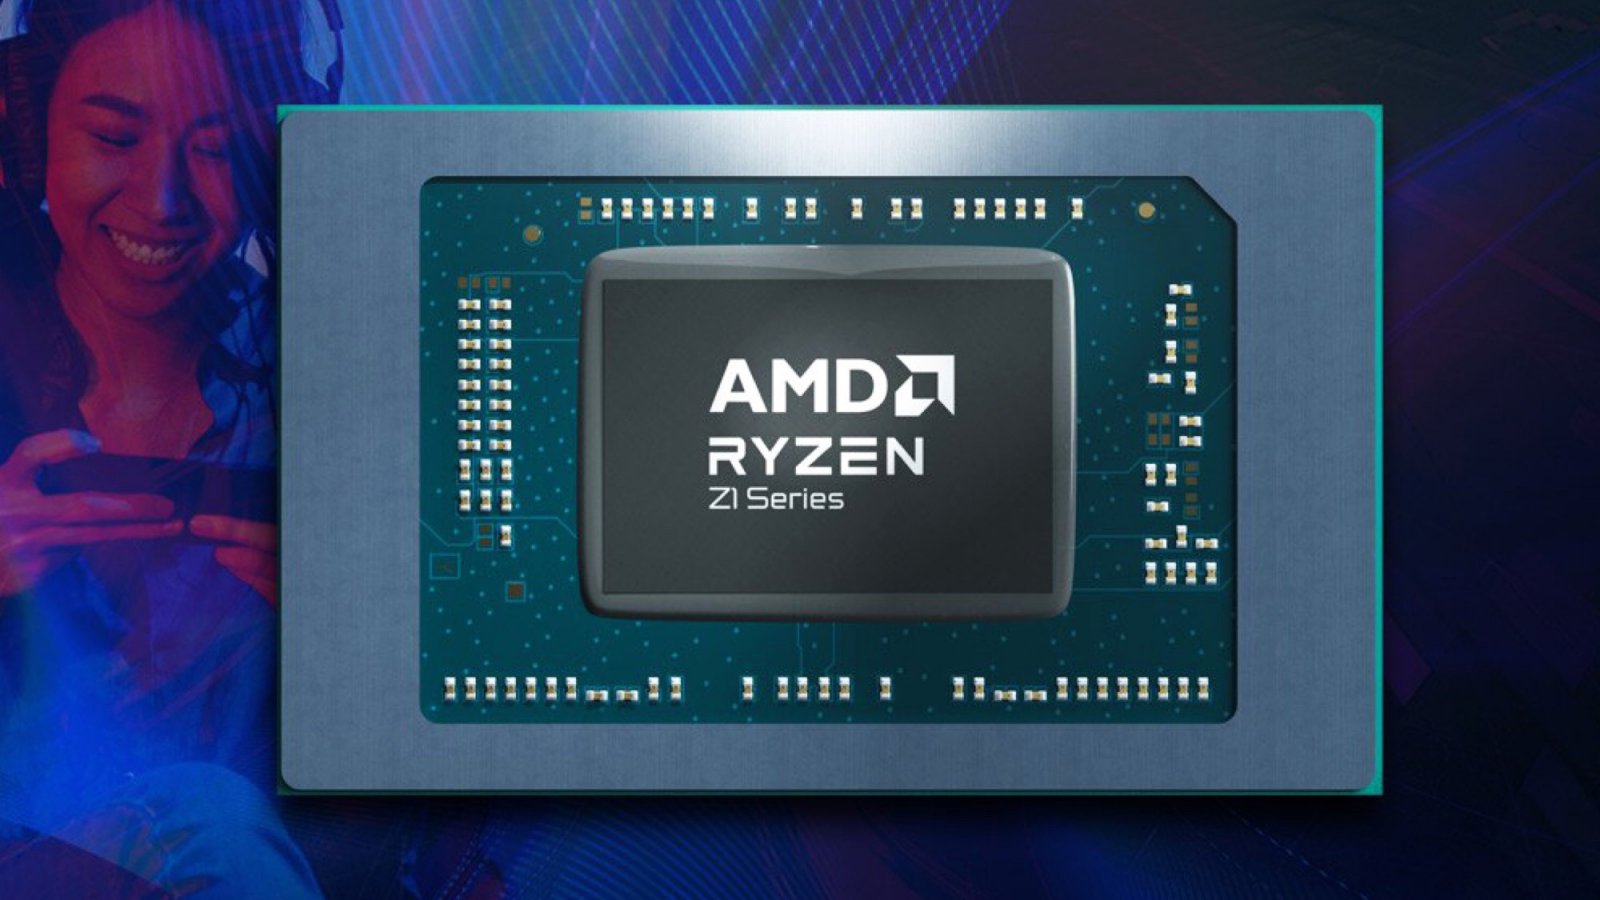 L'APU AMD Ryzen Z1 Extreme protagonista di nuovi benchmark